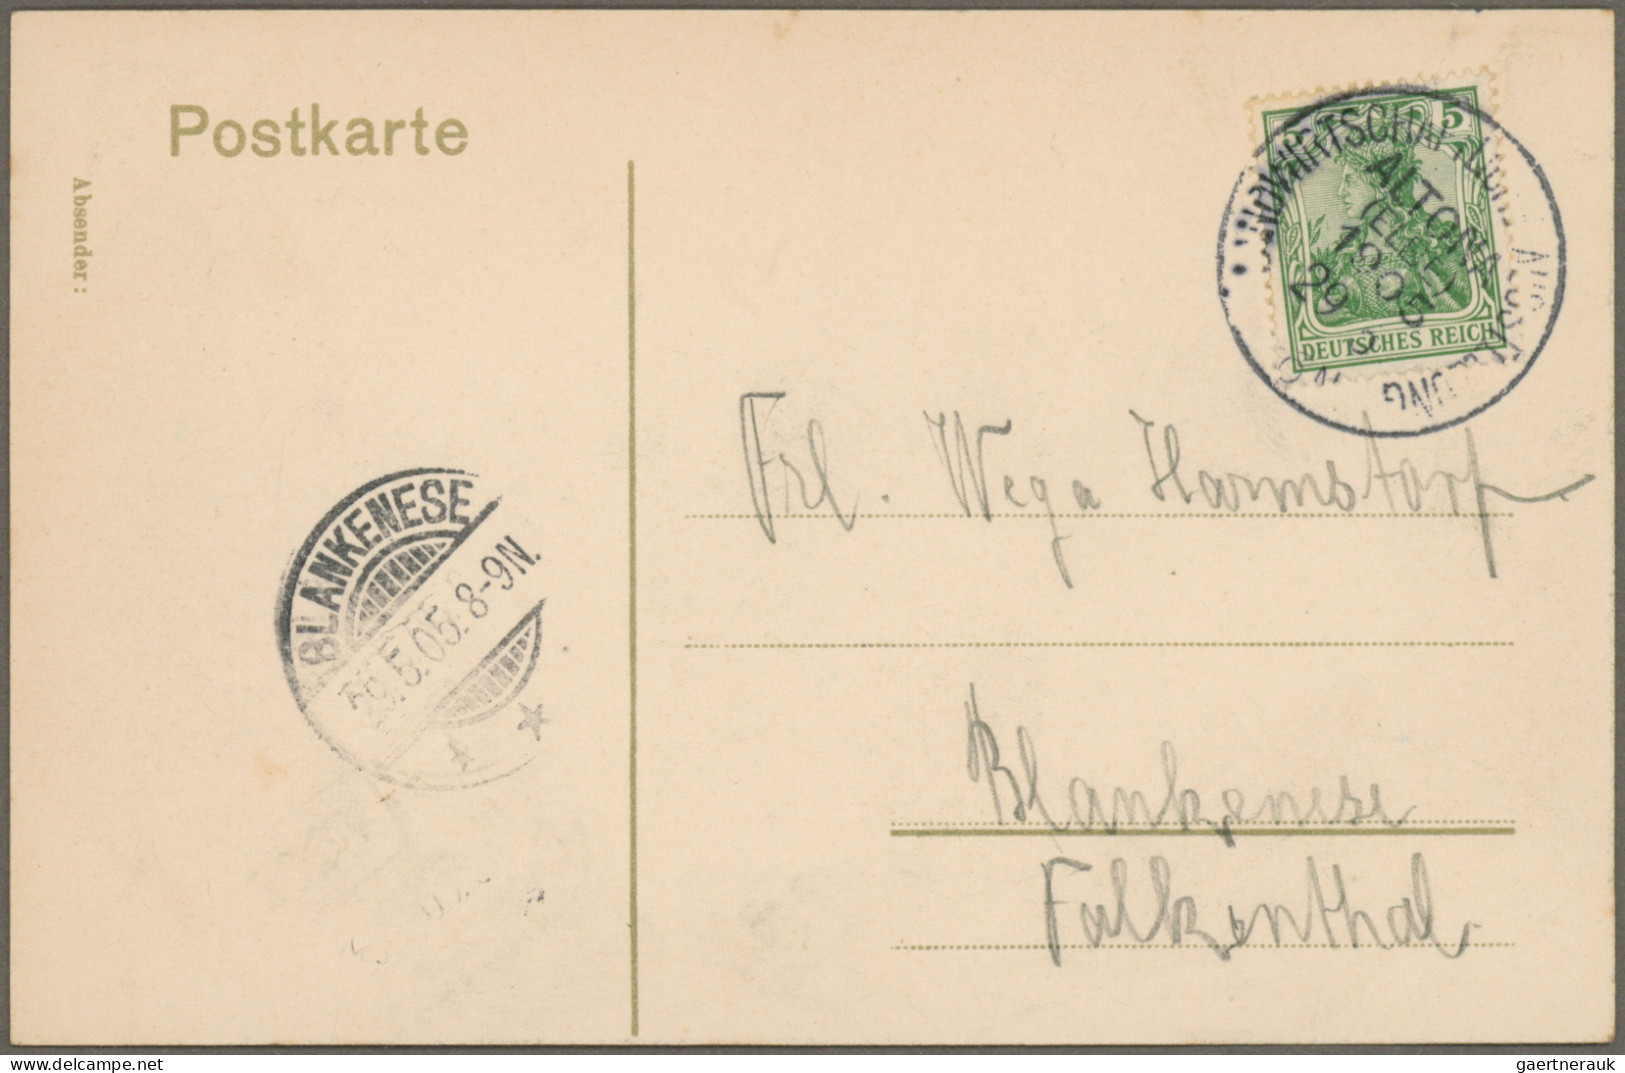 Heimat: Hamburg: 1869/1932, Partie von 31 Belegen, dabei etliche Ansichtskarten,